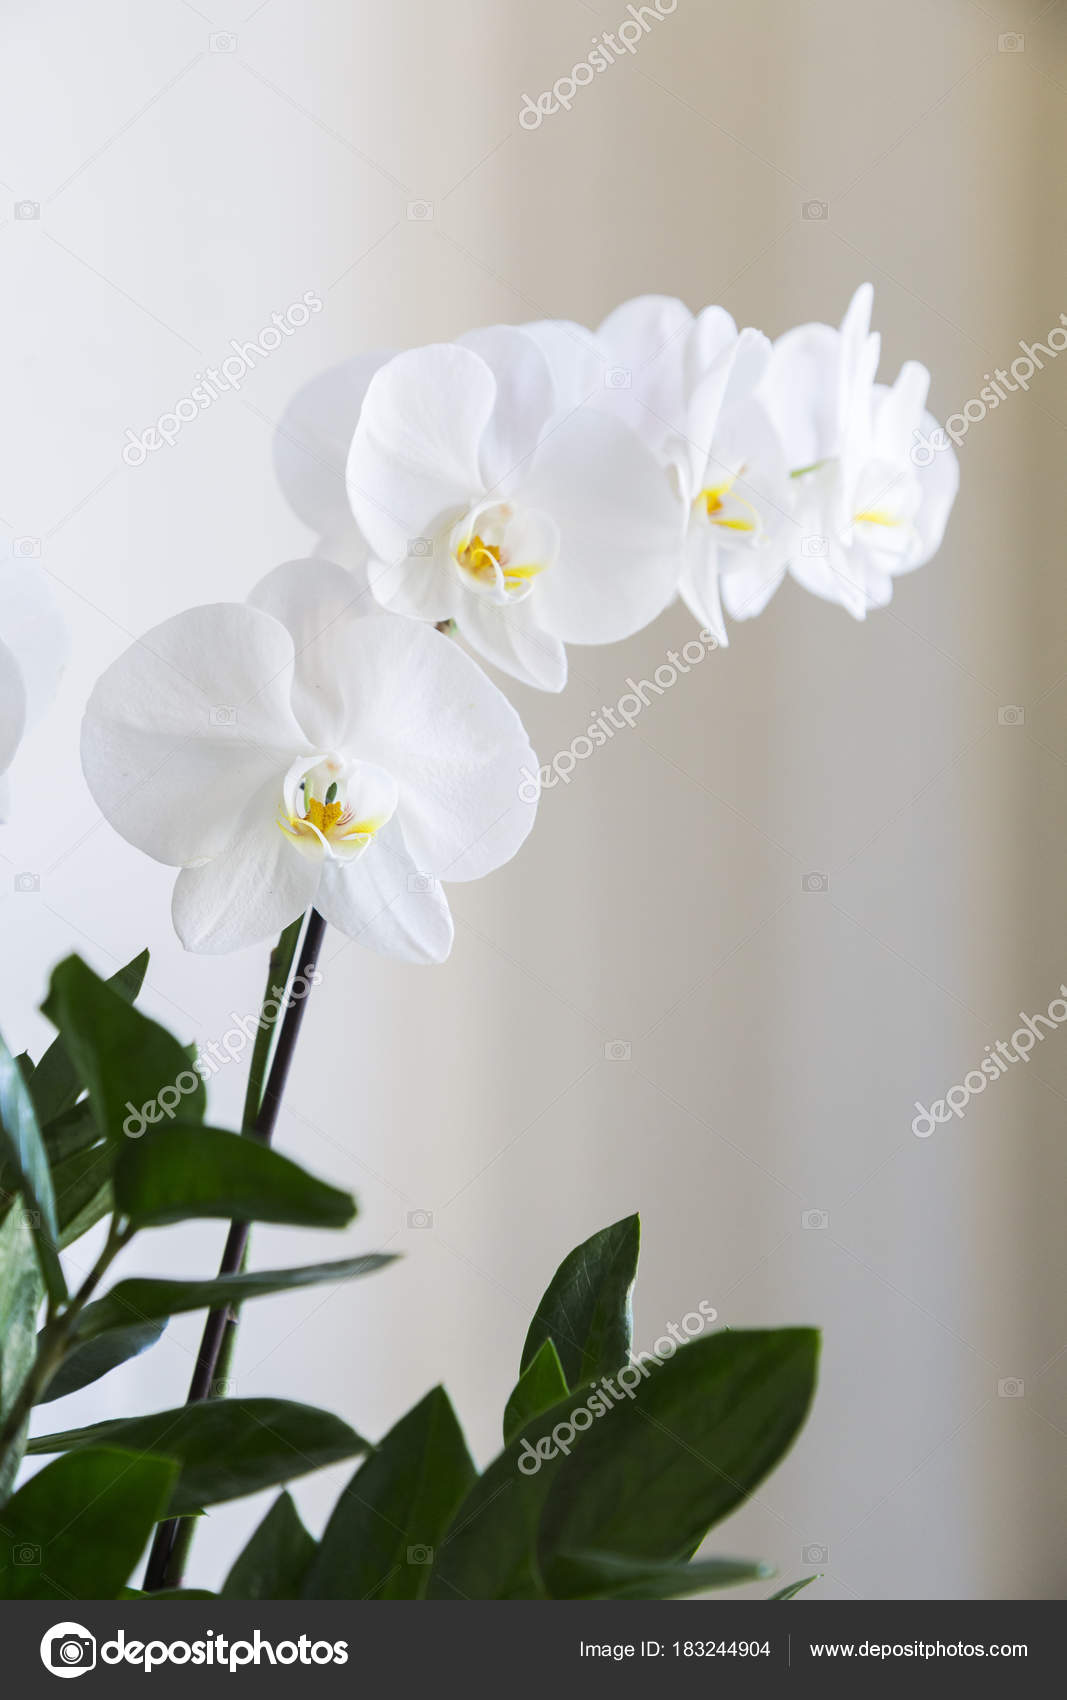 Flor branca natural fresca da orquídea com umas folhas verdes no vaso  fotos, imagens de © paulgulea.gmail.com #183244904